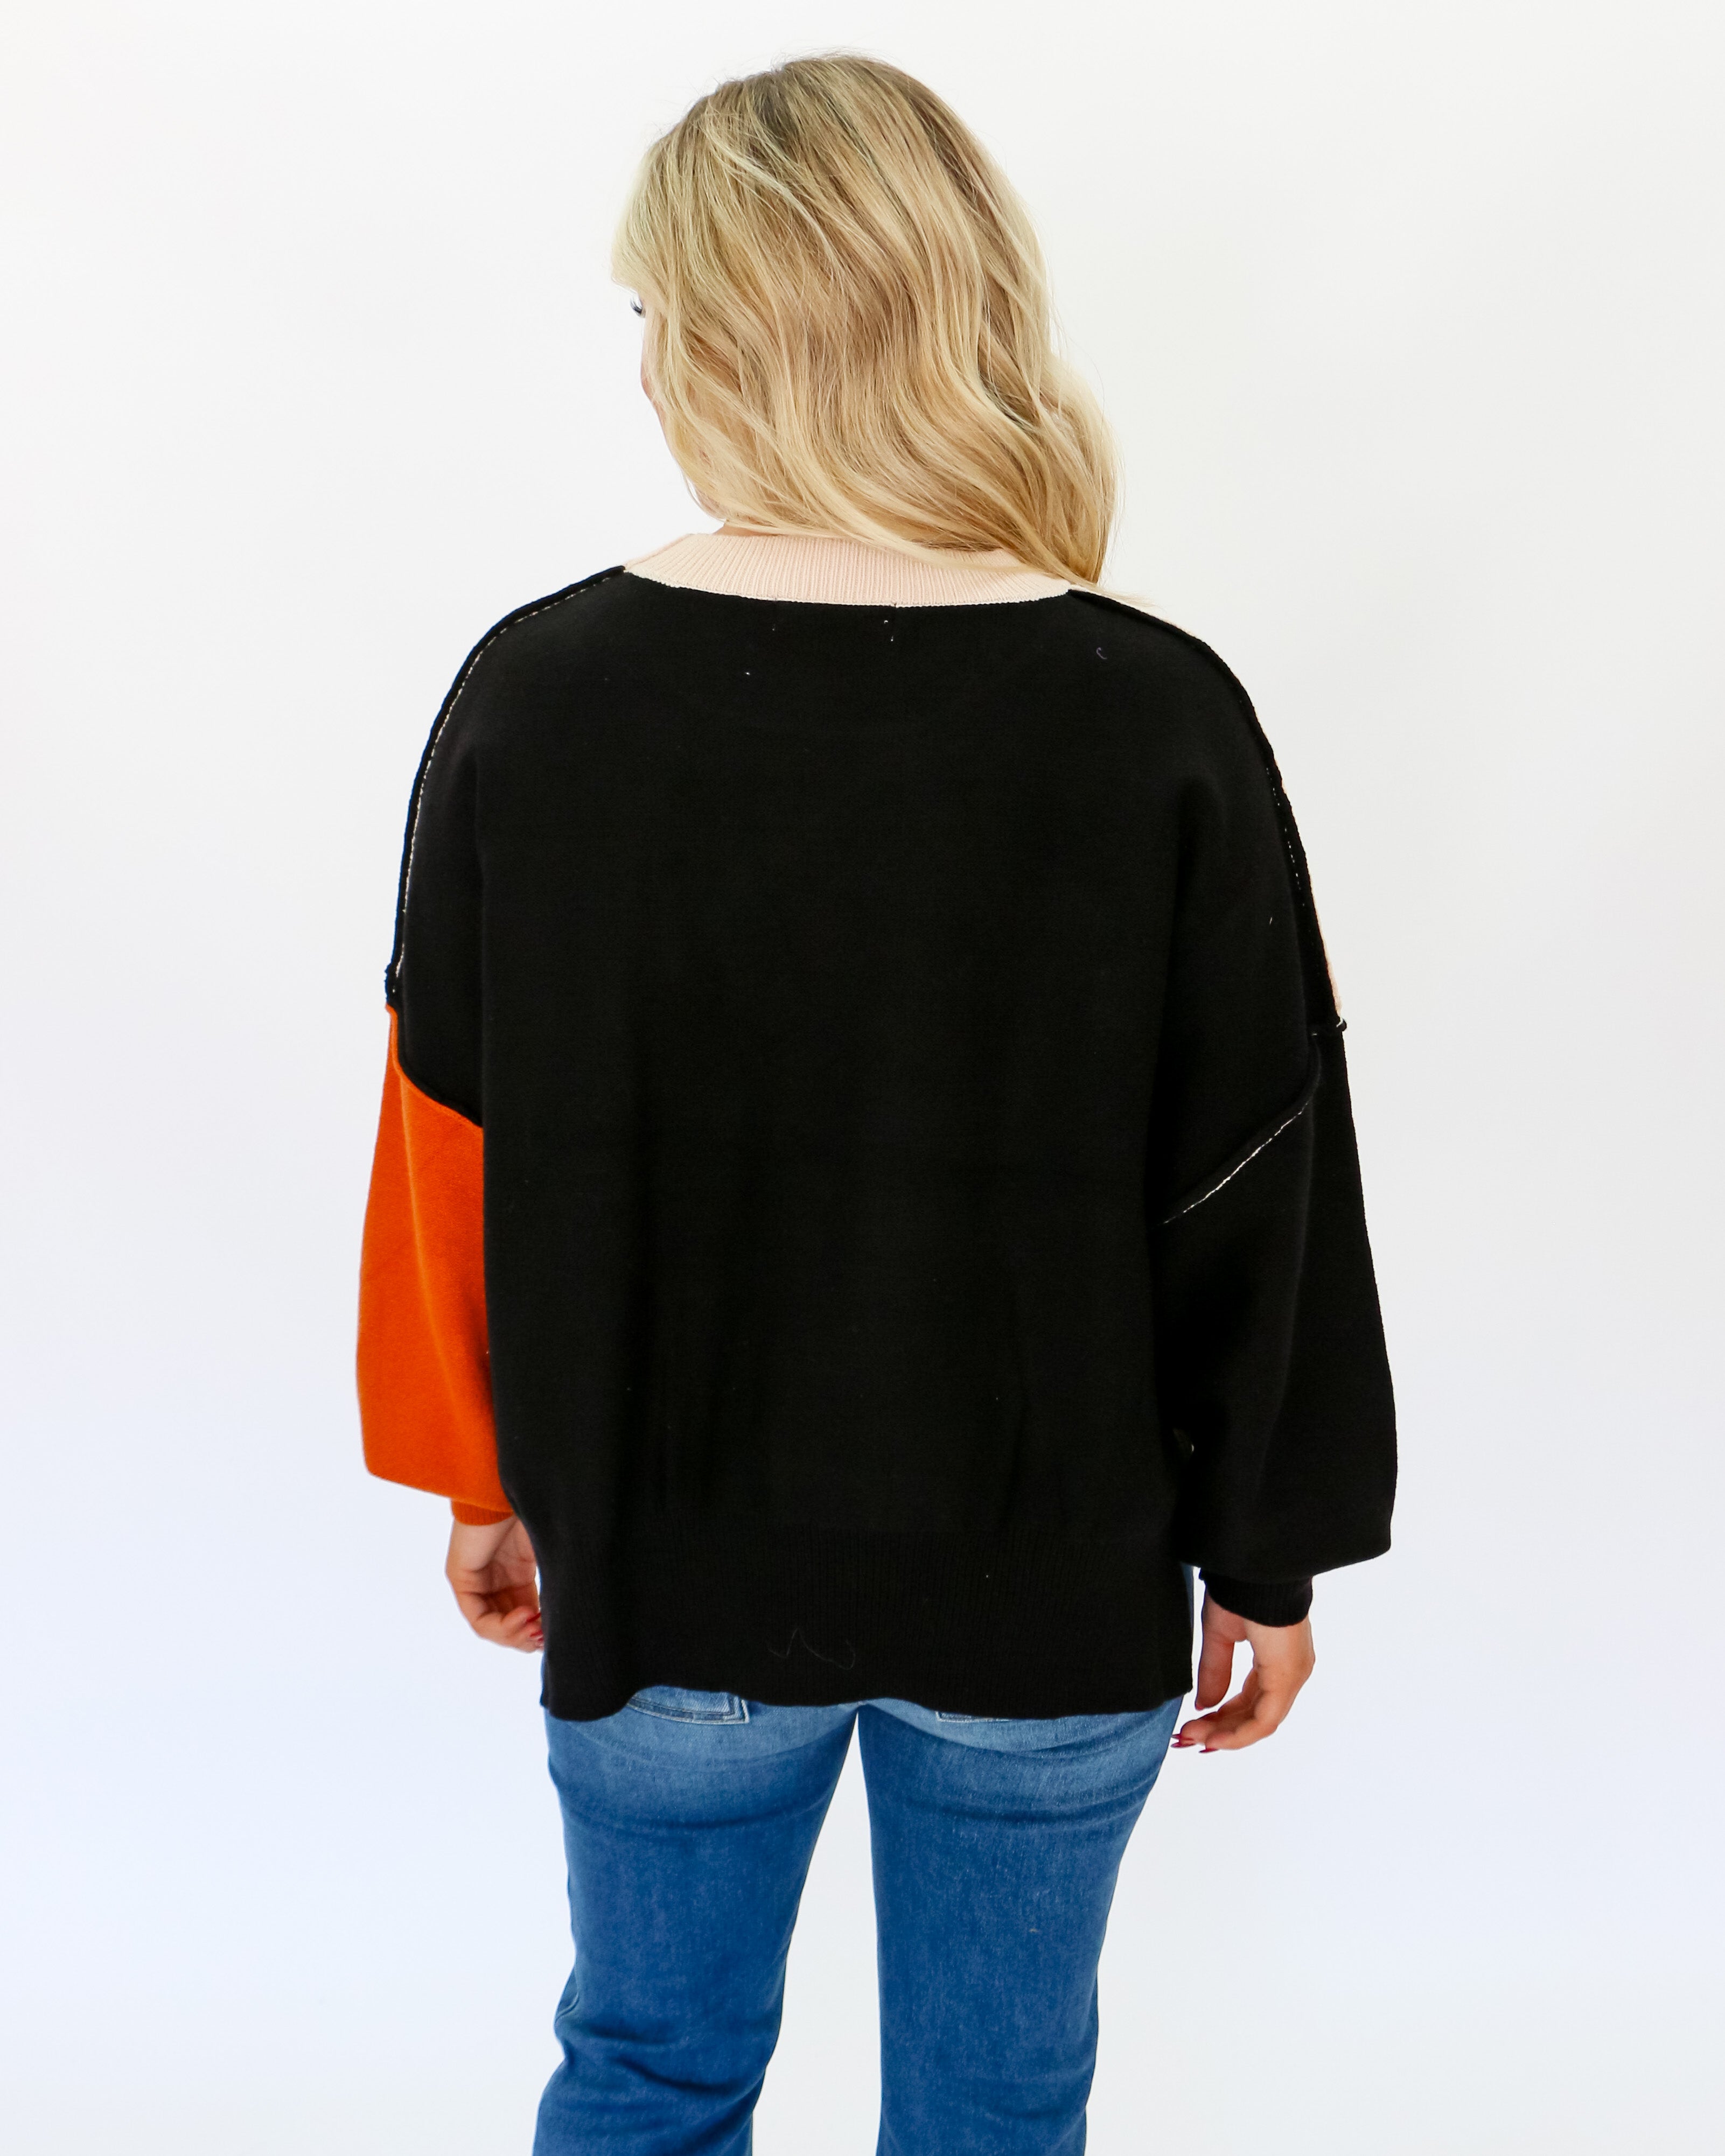 Bubble Sleeve Colorblock Sweater in Black Oat Rust